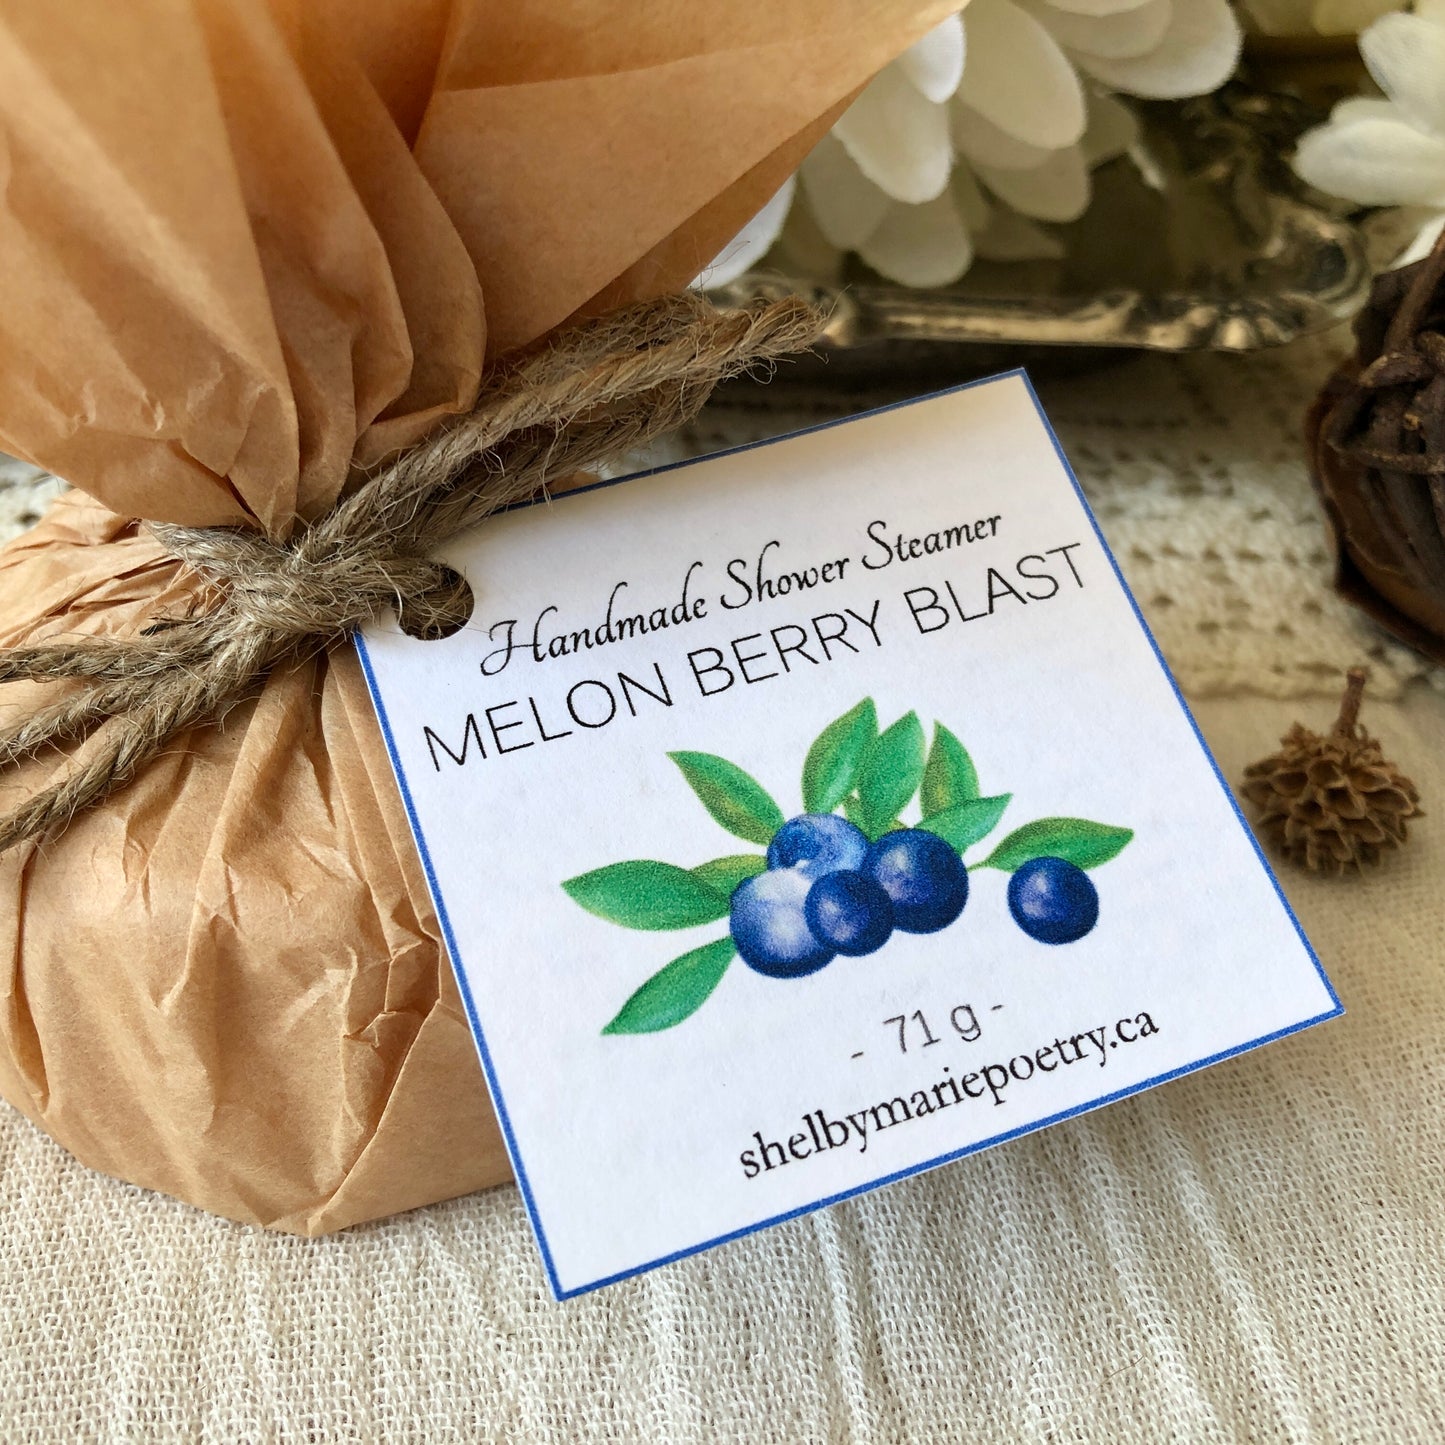 Melon Berry Blast - Shower Steamer